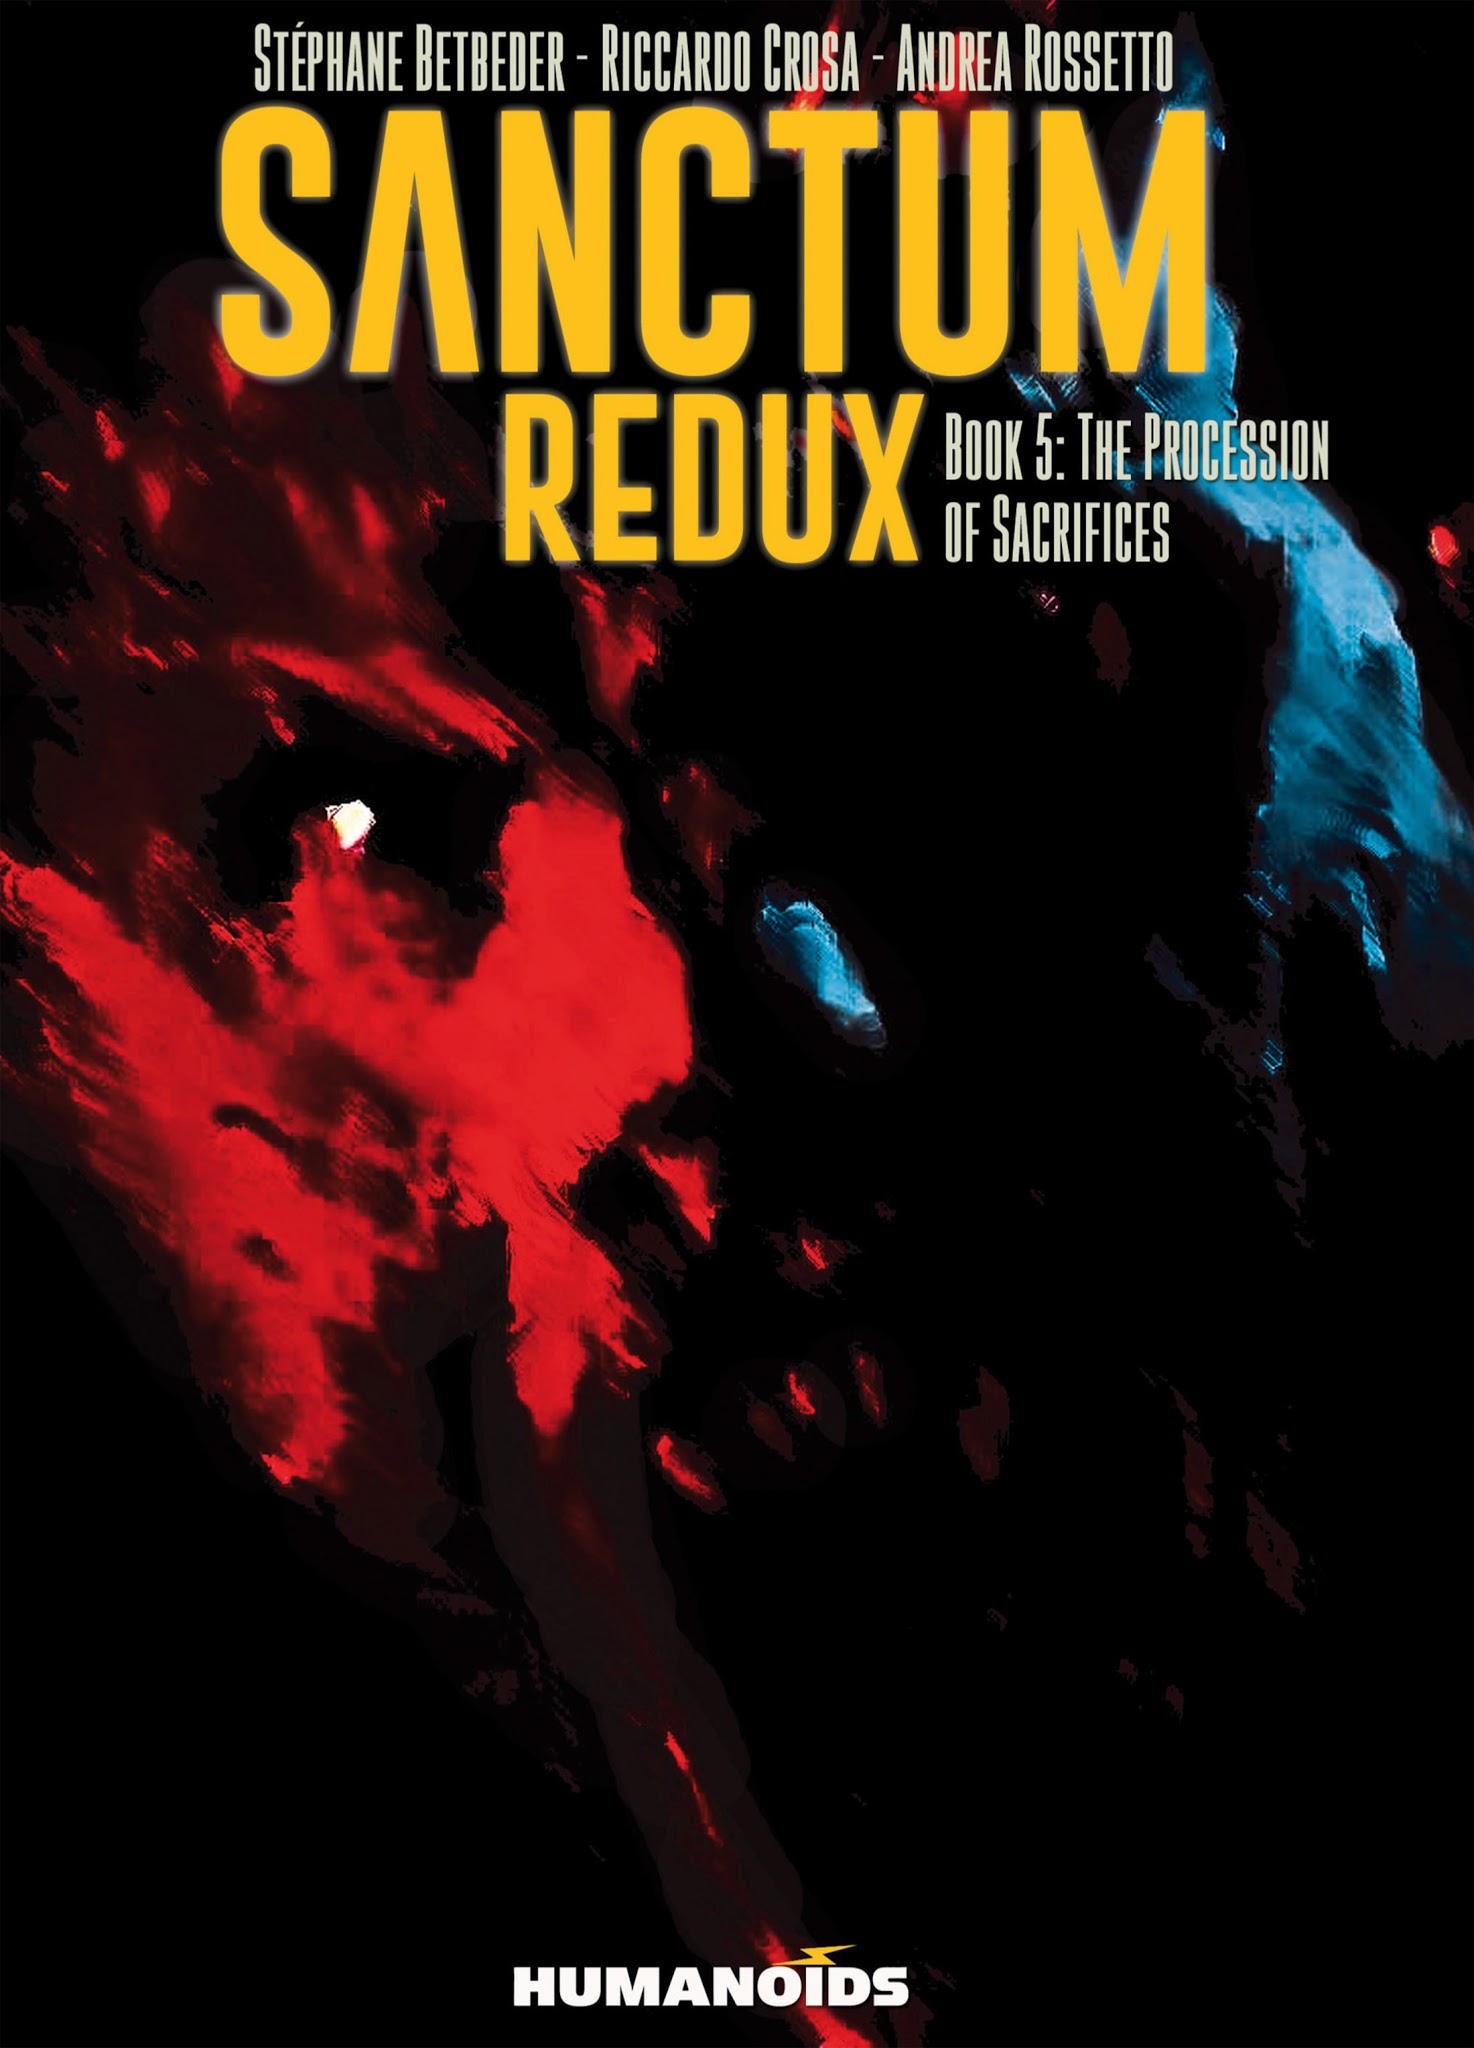 Read online Sanctum Redux comic -  Issue #5 - 1